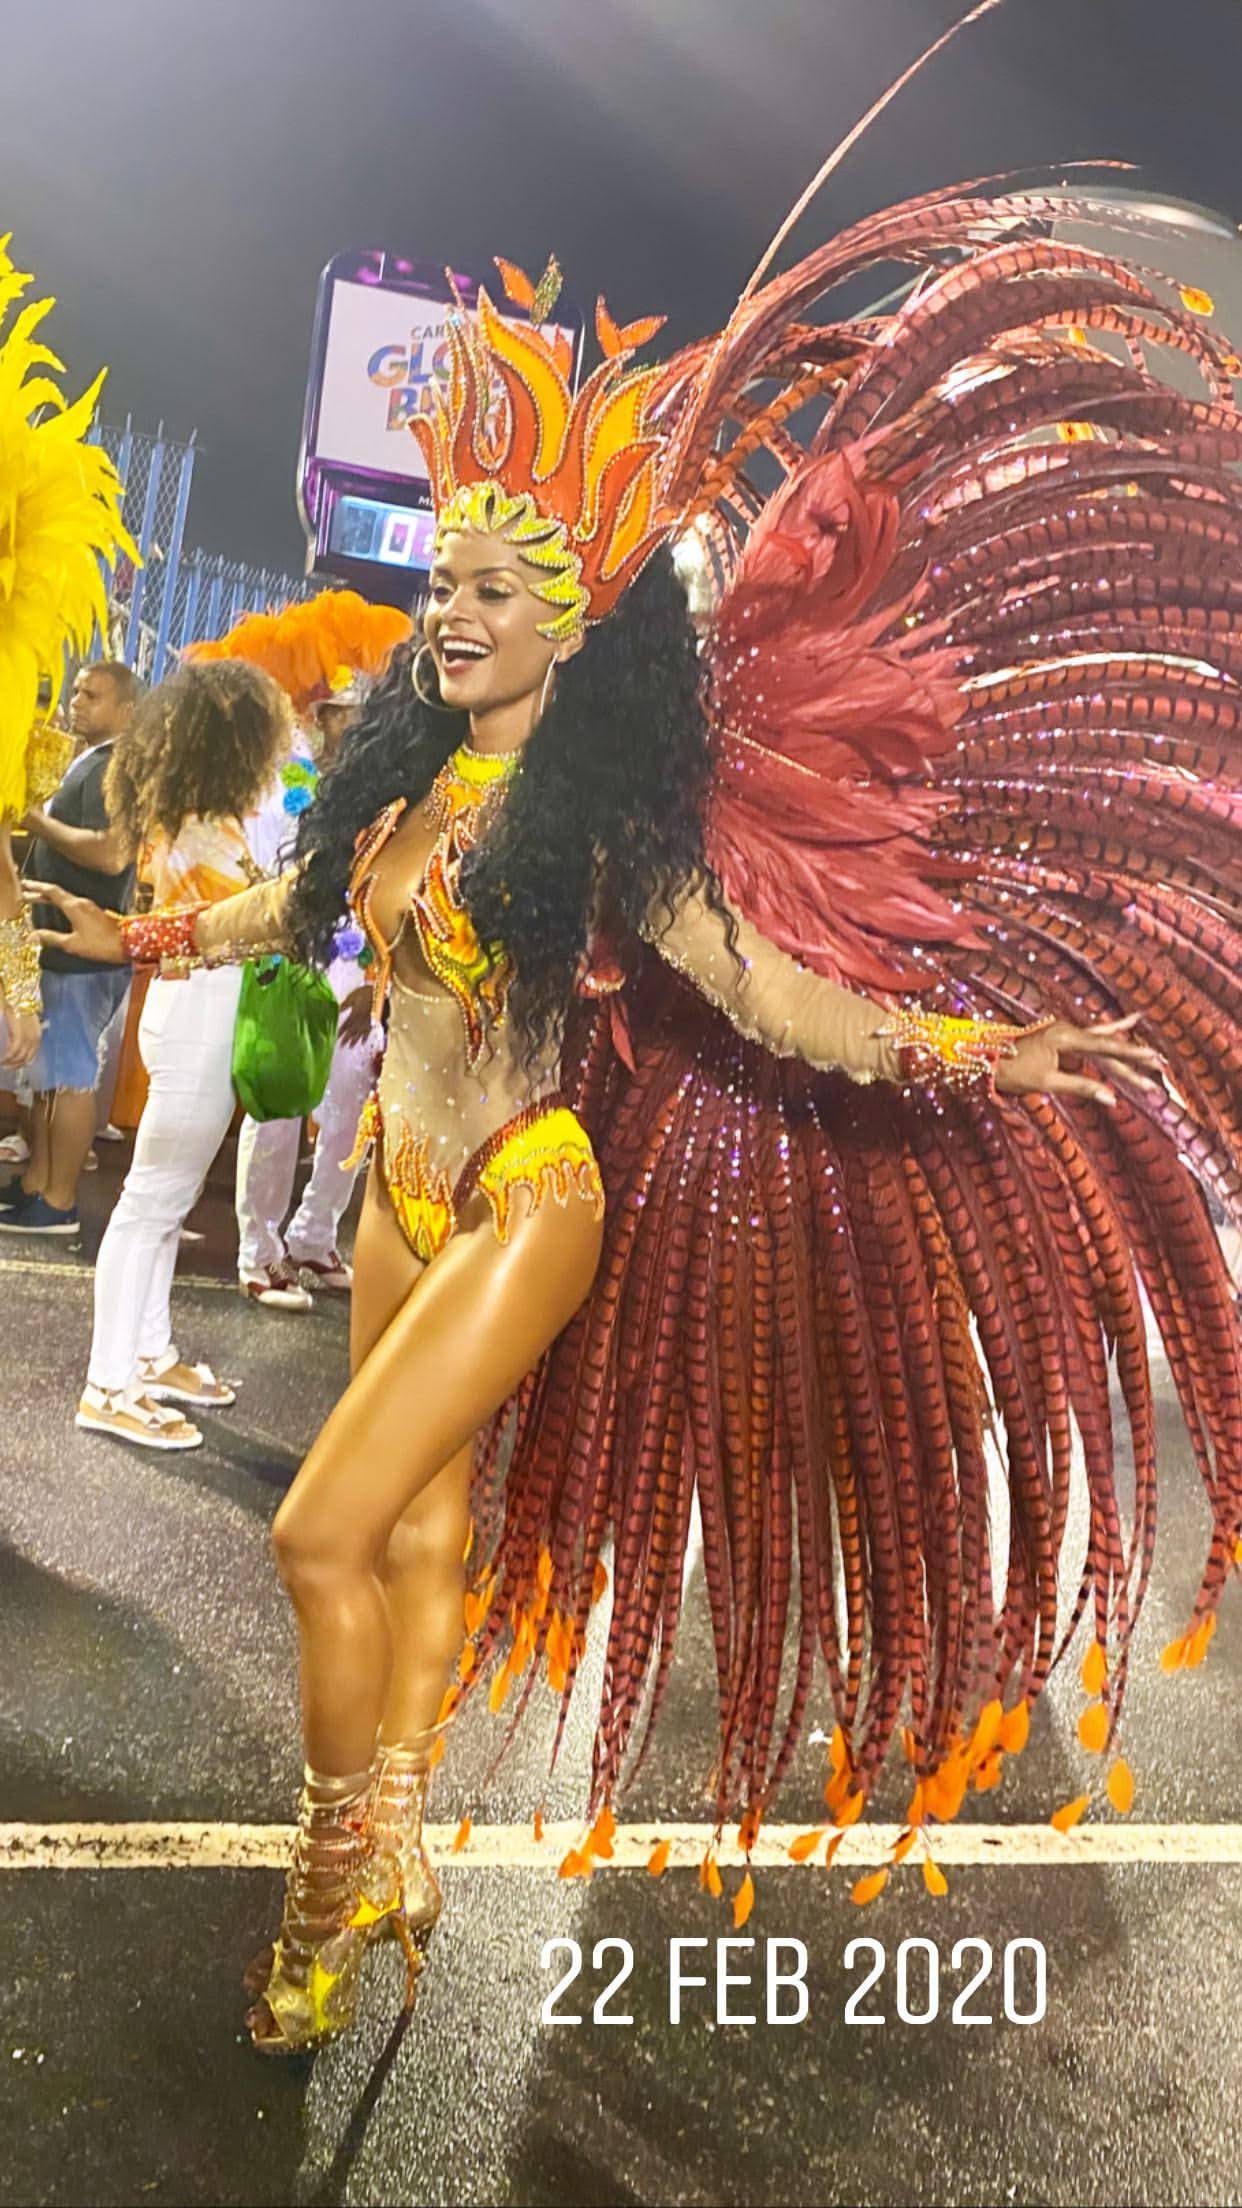 Naša Ane 'pali' Rio: Kostim za karneval košta 37.000 kuna...